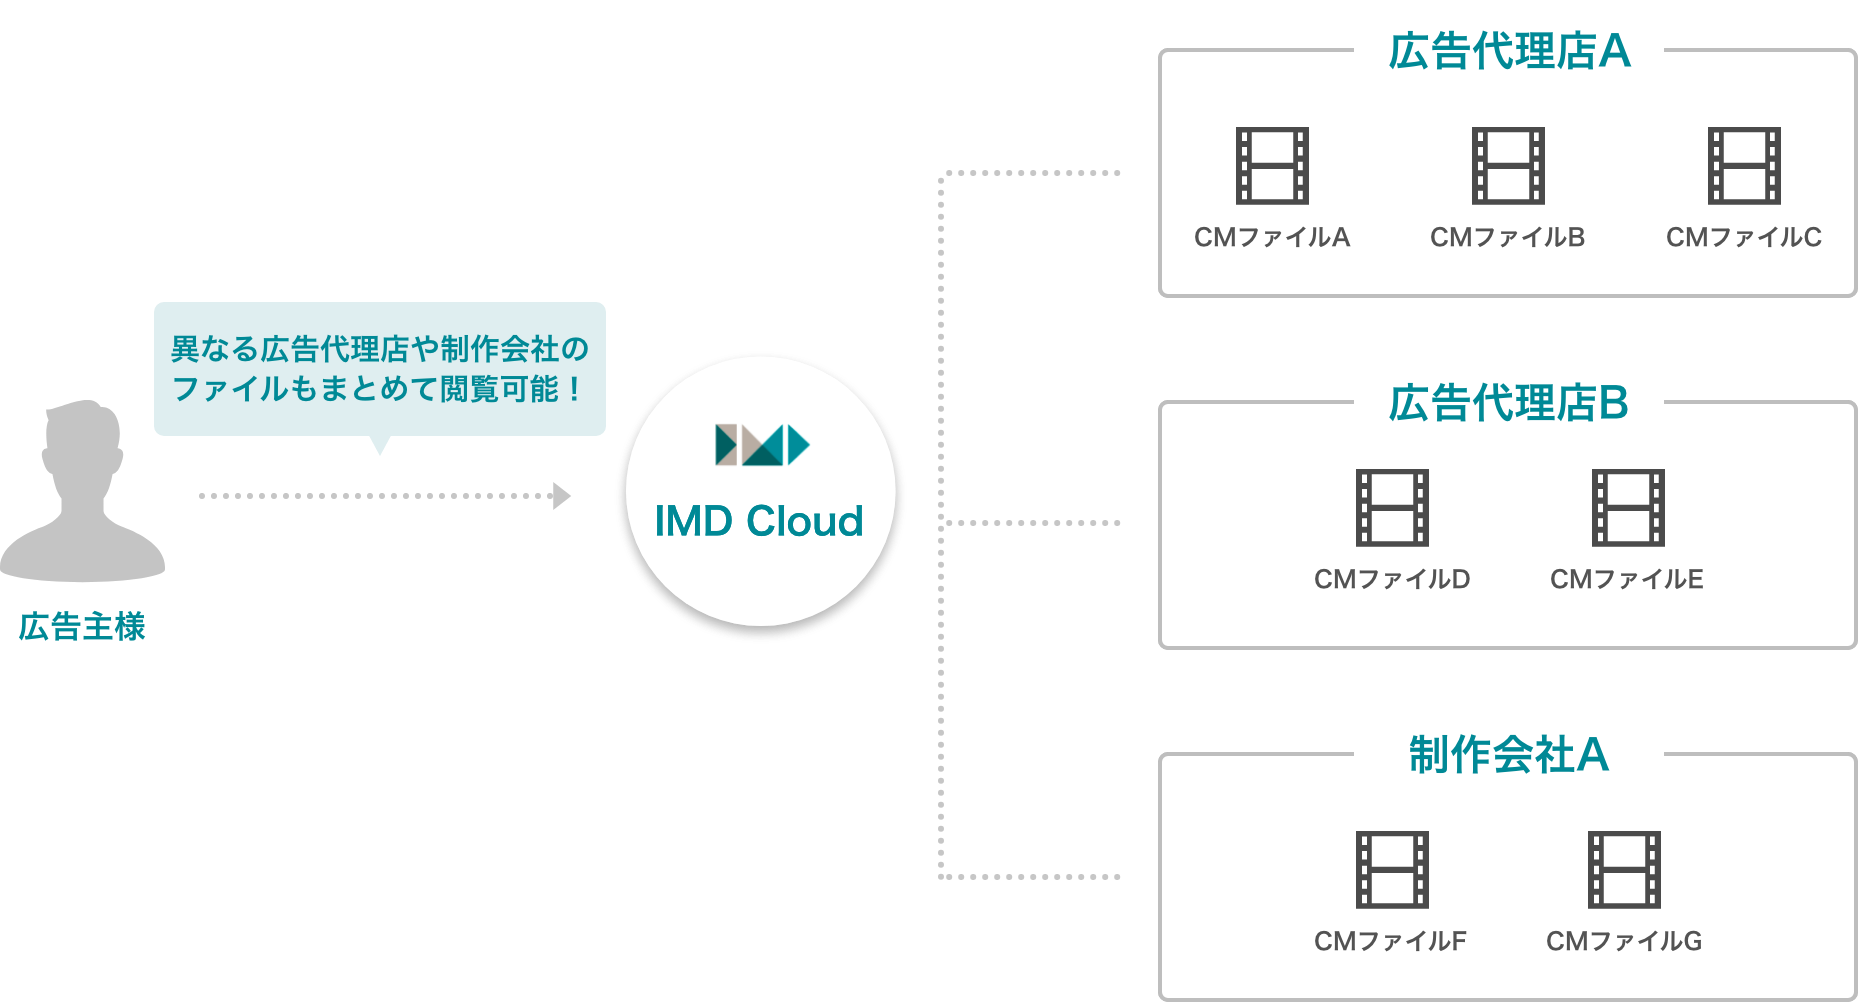 広告主様→IMD Cloud（異なる制作会社のファイルもまとめて閲覧可能！）→制作会社A・CMファイルA・CMファイルB・CMファイルC、制作会社B・CMファイルD・CMファイルE、制作会社C・CMファイルF・CMファイルG